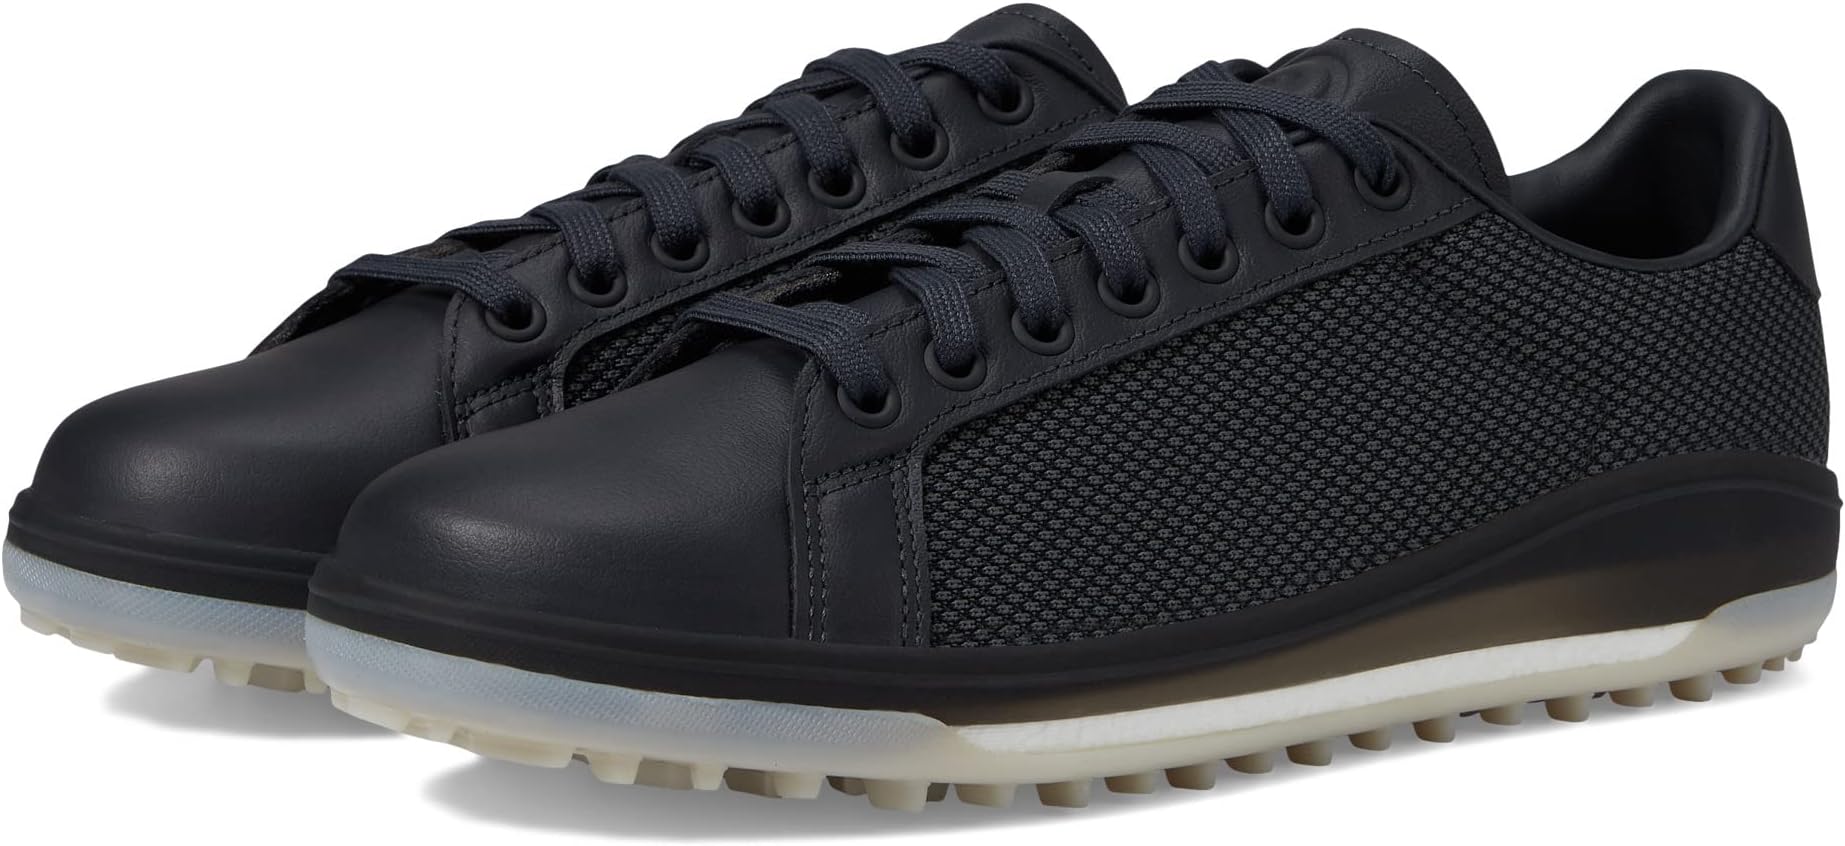 Кроссовки Go-To Spkl 1 Golf Shoes adidas, цвет Carbon/Carbon/Grey Two фотографии